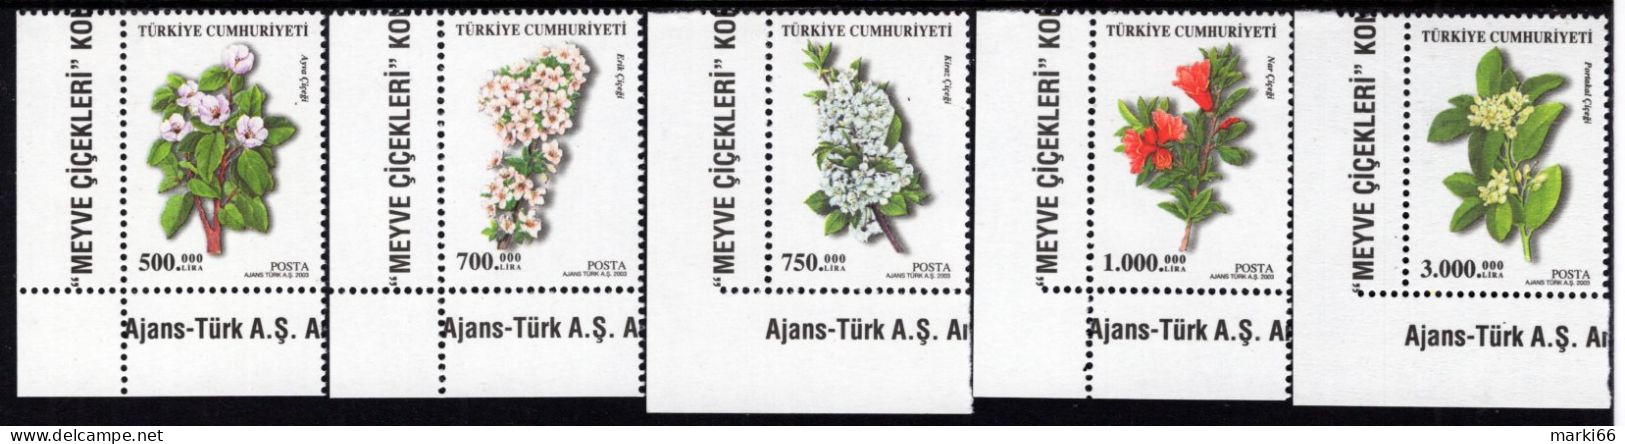 Turkey - 2003 - Flowering Trees - Mint Stamp Set - Nuovi